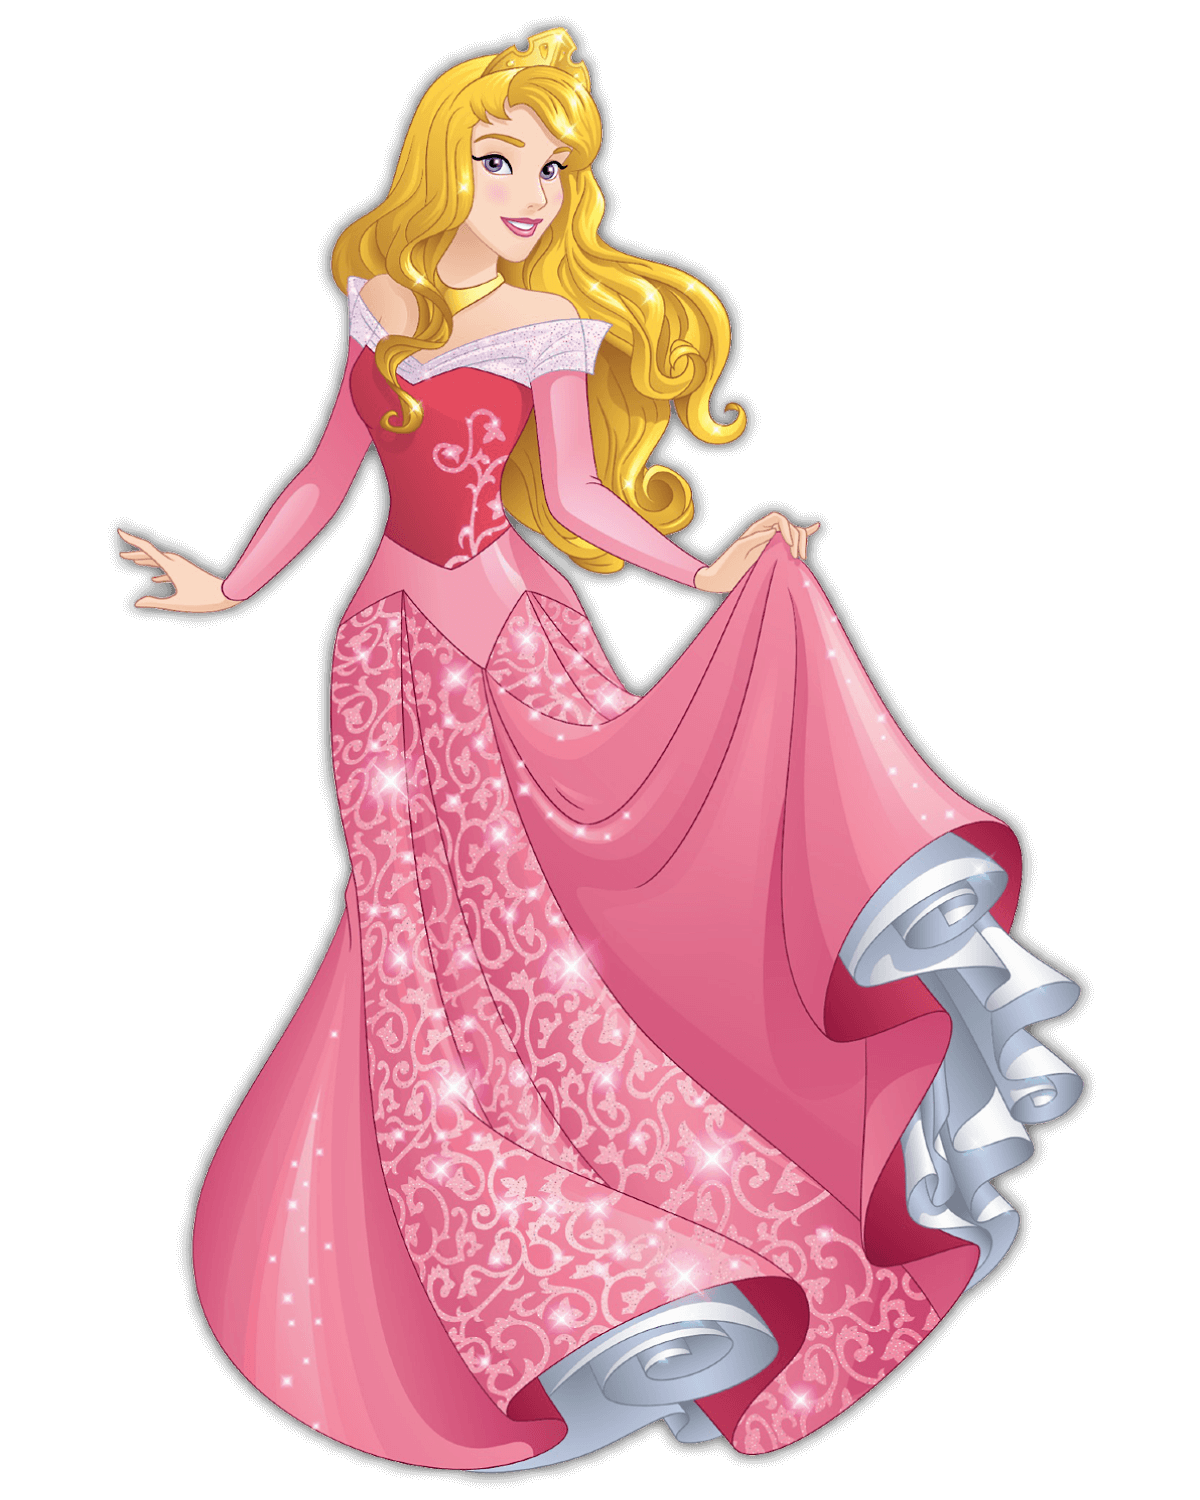 Disney Prinzessin Aurora aus dem Film Dornröschen in einem eleganten rosafarbenen Kleid